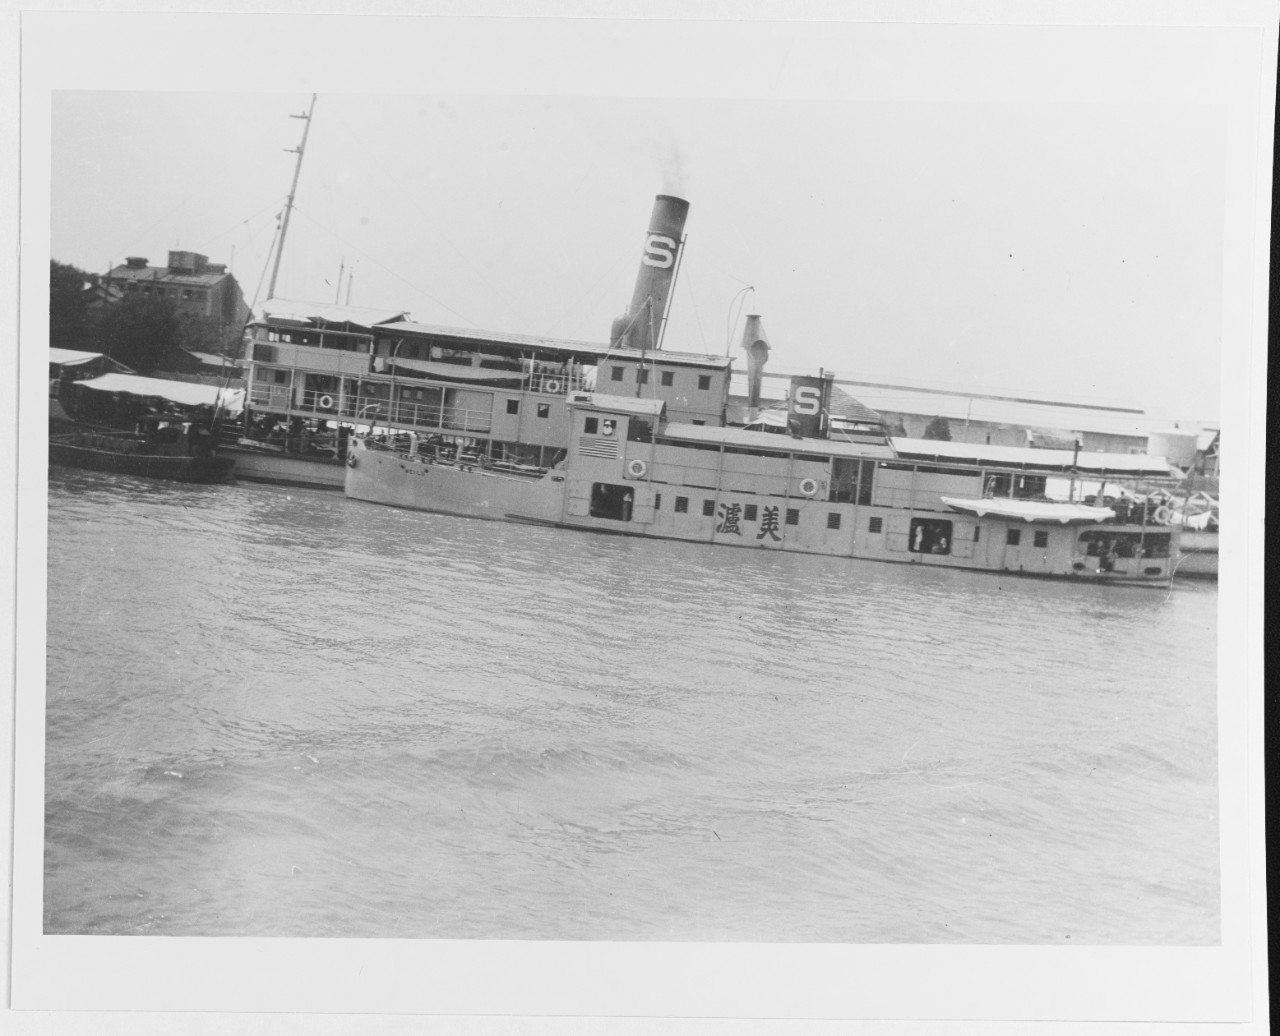 MEI LI (Standard oil company river steamer)